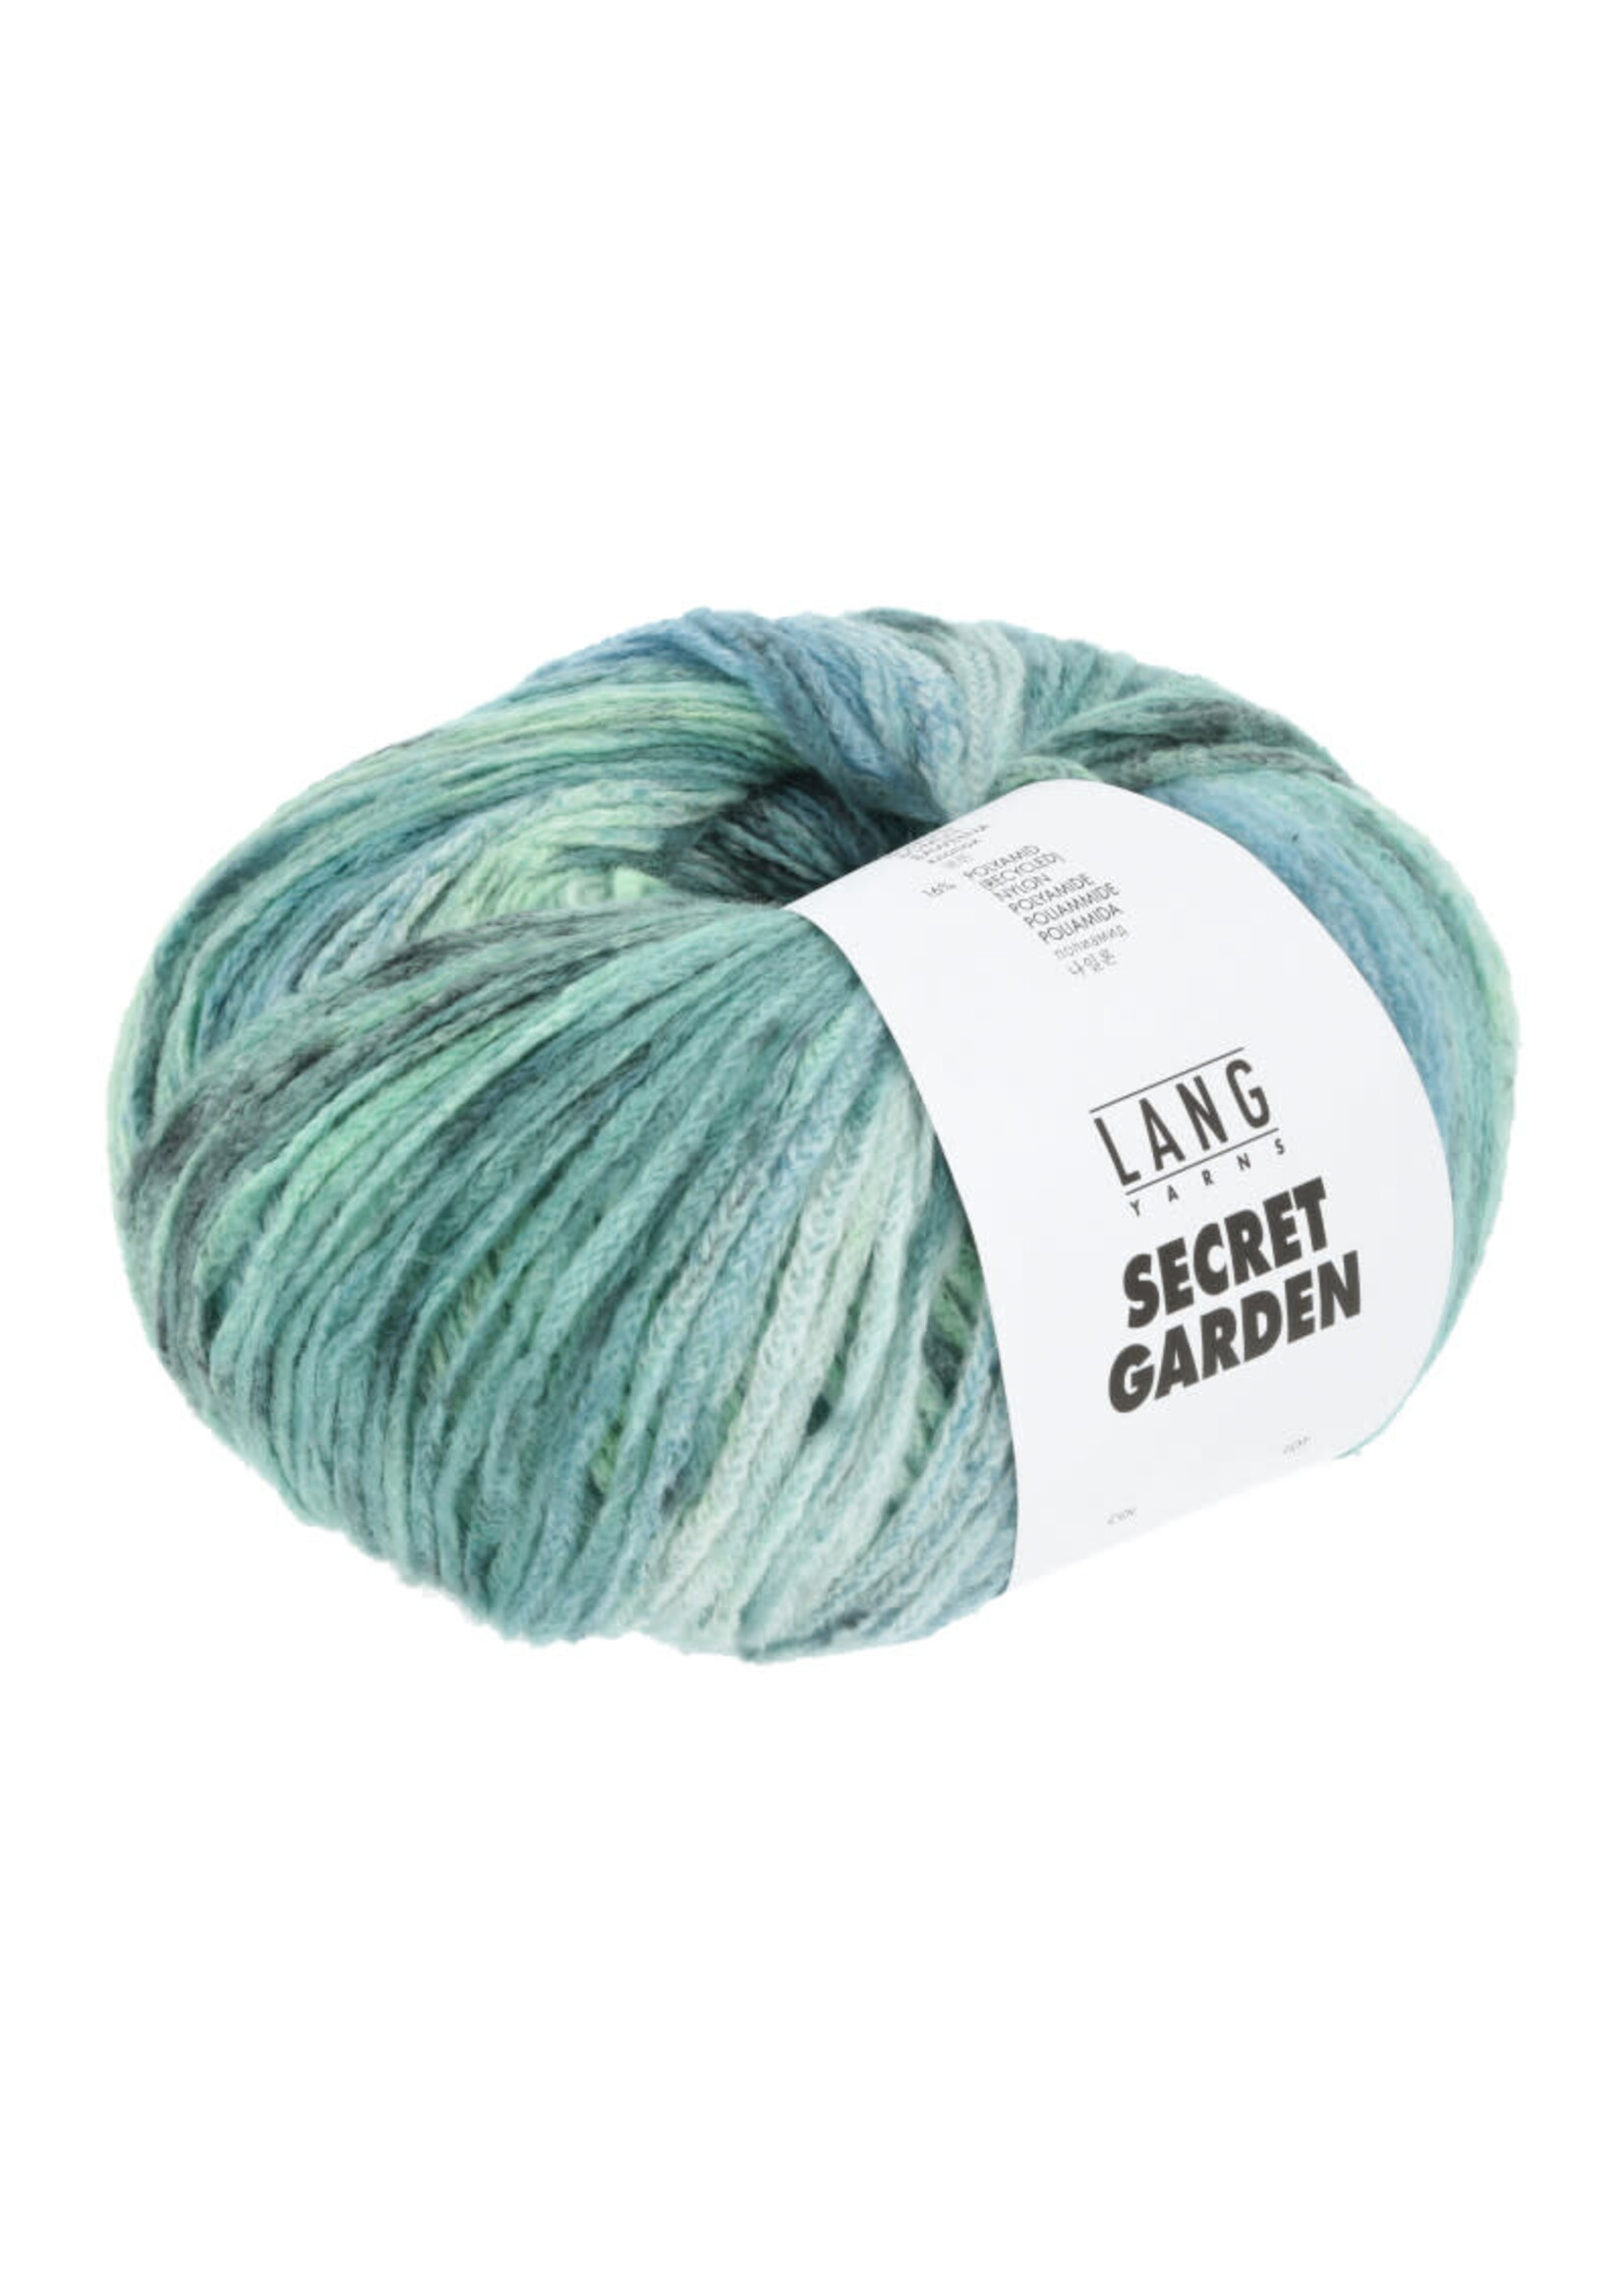 LangYarns Secret Garden - 0008 Turquoise/atlantic